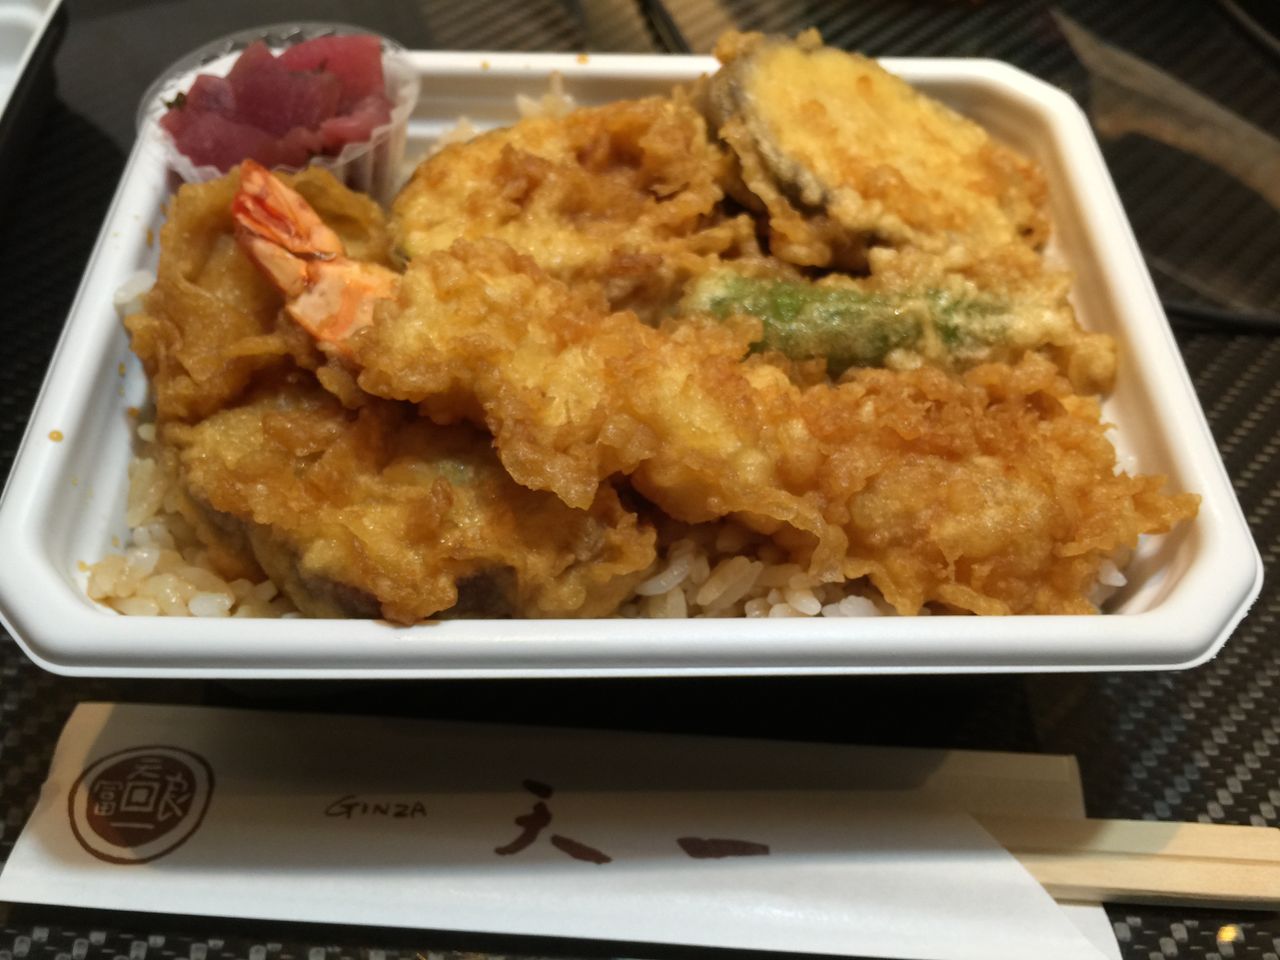 今日も松屋さんデパ地下で昼飯購入 今回は天ぷらで有名な天一さんの天丼弁当を買ってきました 天ぷら 弁当 天一 銀座 松屋 デパ地下 とあるバイヤーの全国食べ歩き日記